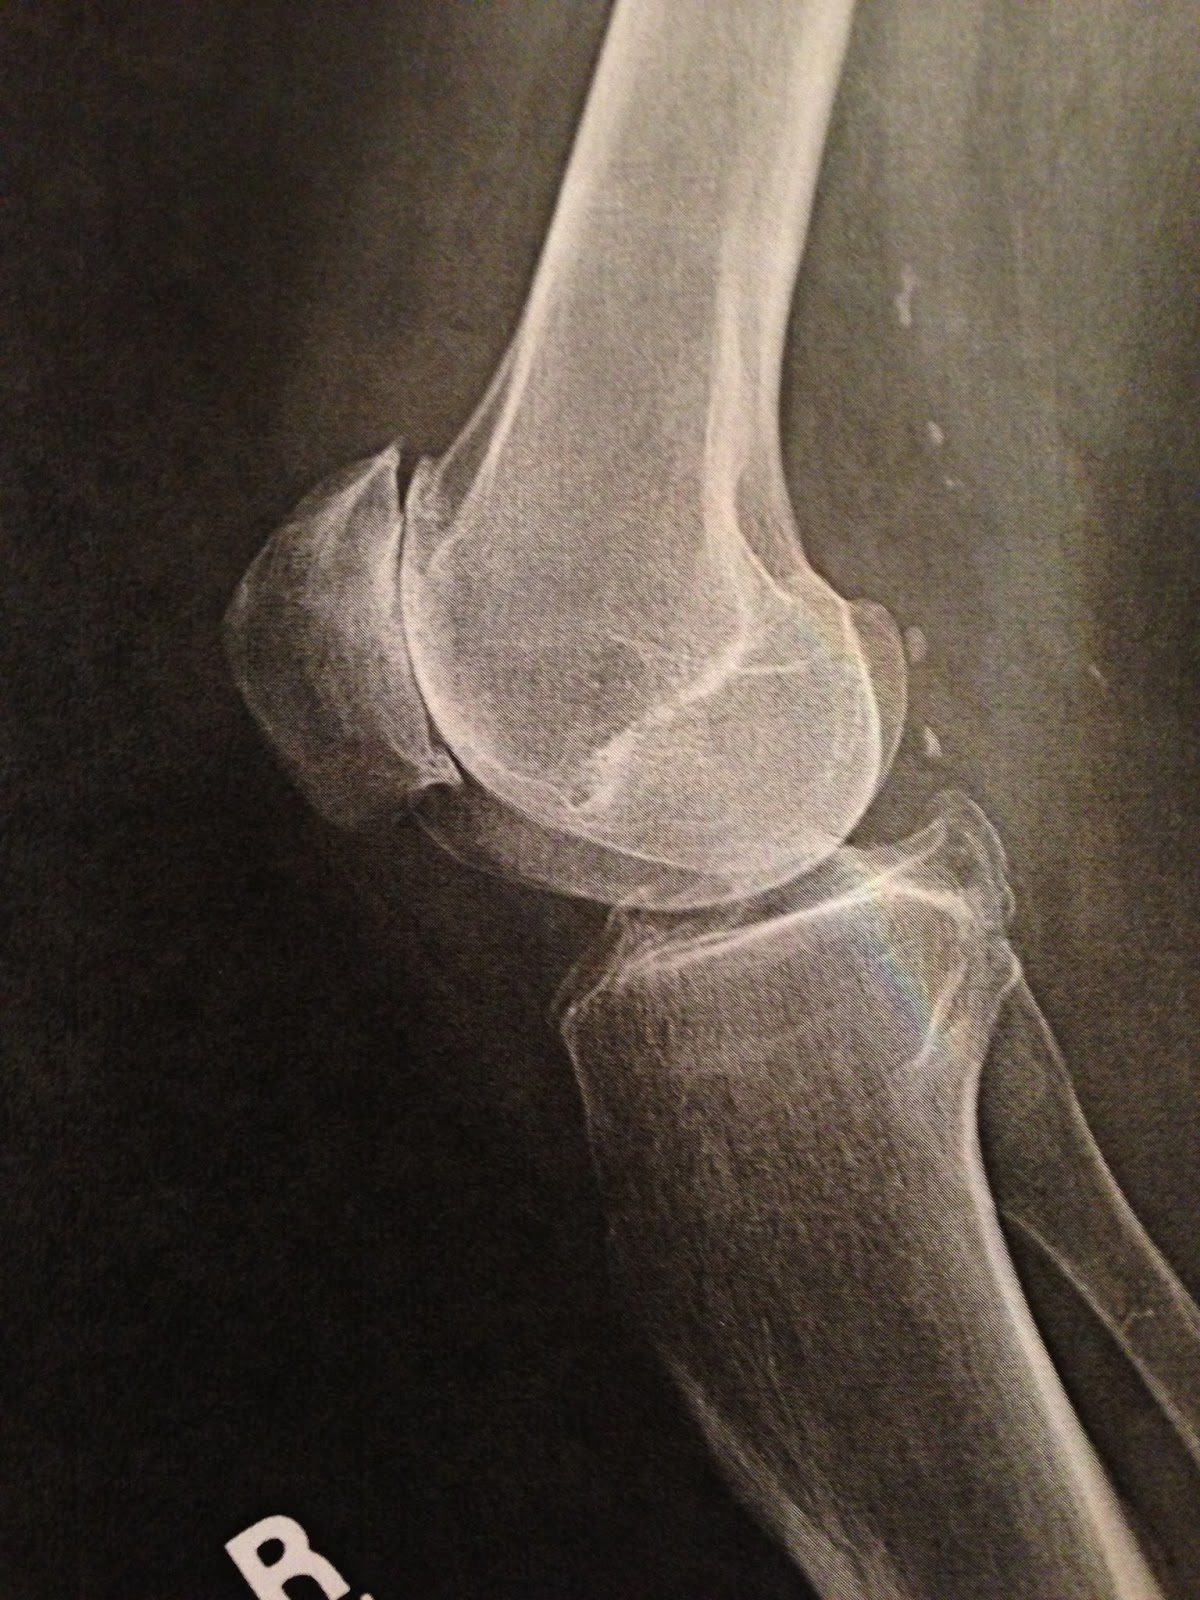 Рентген колена. Хондромаляция надколенника рентген. Лигаментоз коленного сустава рентген. Перелом надколенника рентген. Дольчатый надколенник рентген.